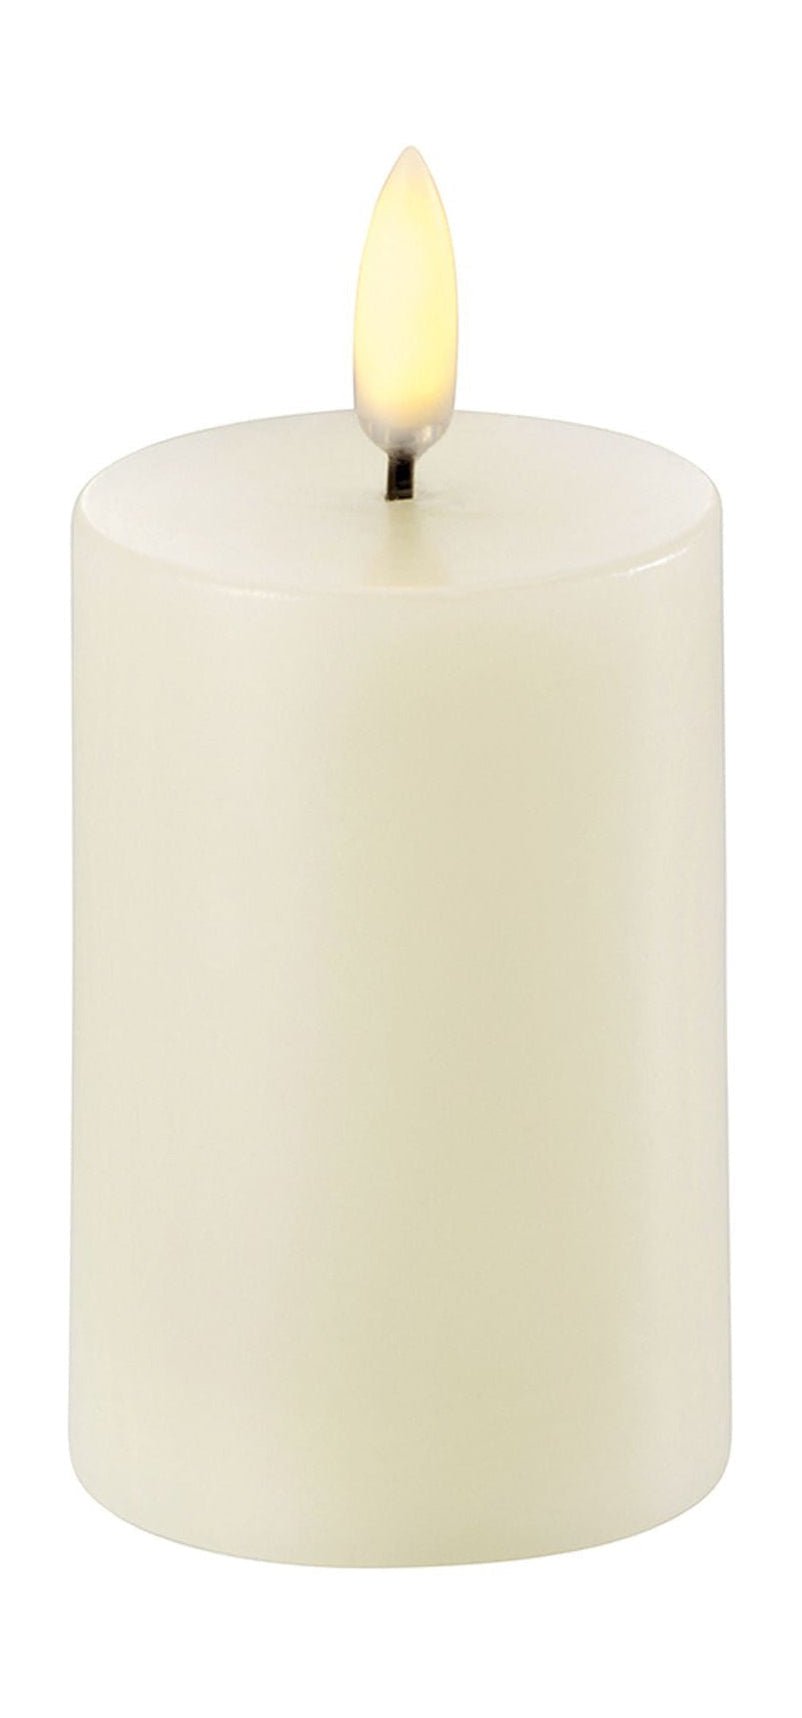 Uyuni Lighting LED Pilier Candle 3 D Flame Øx H 5x7,5 cm, ivoire